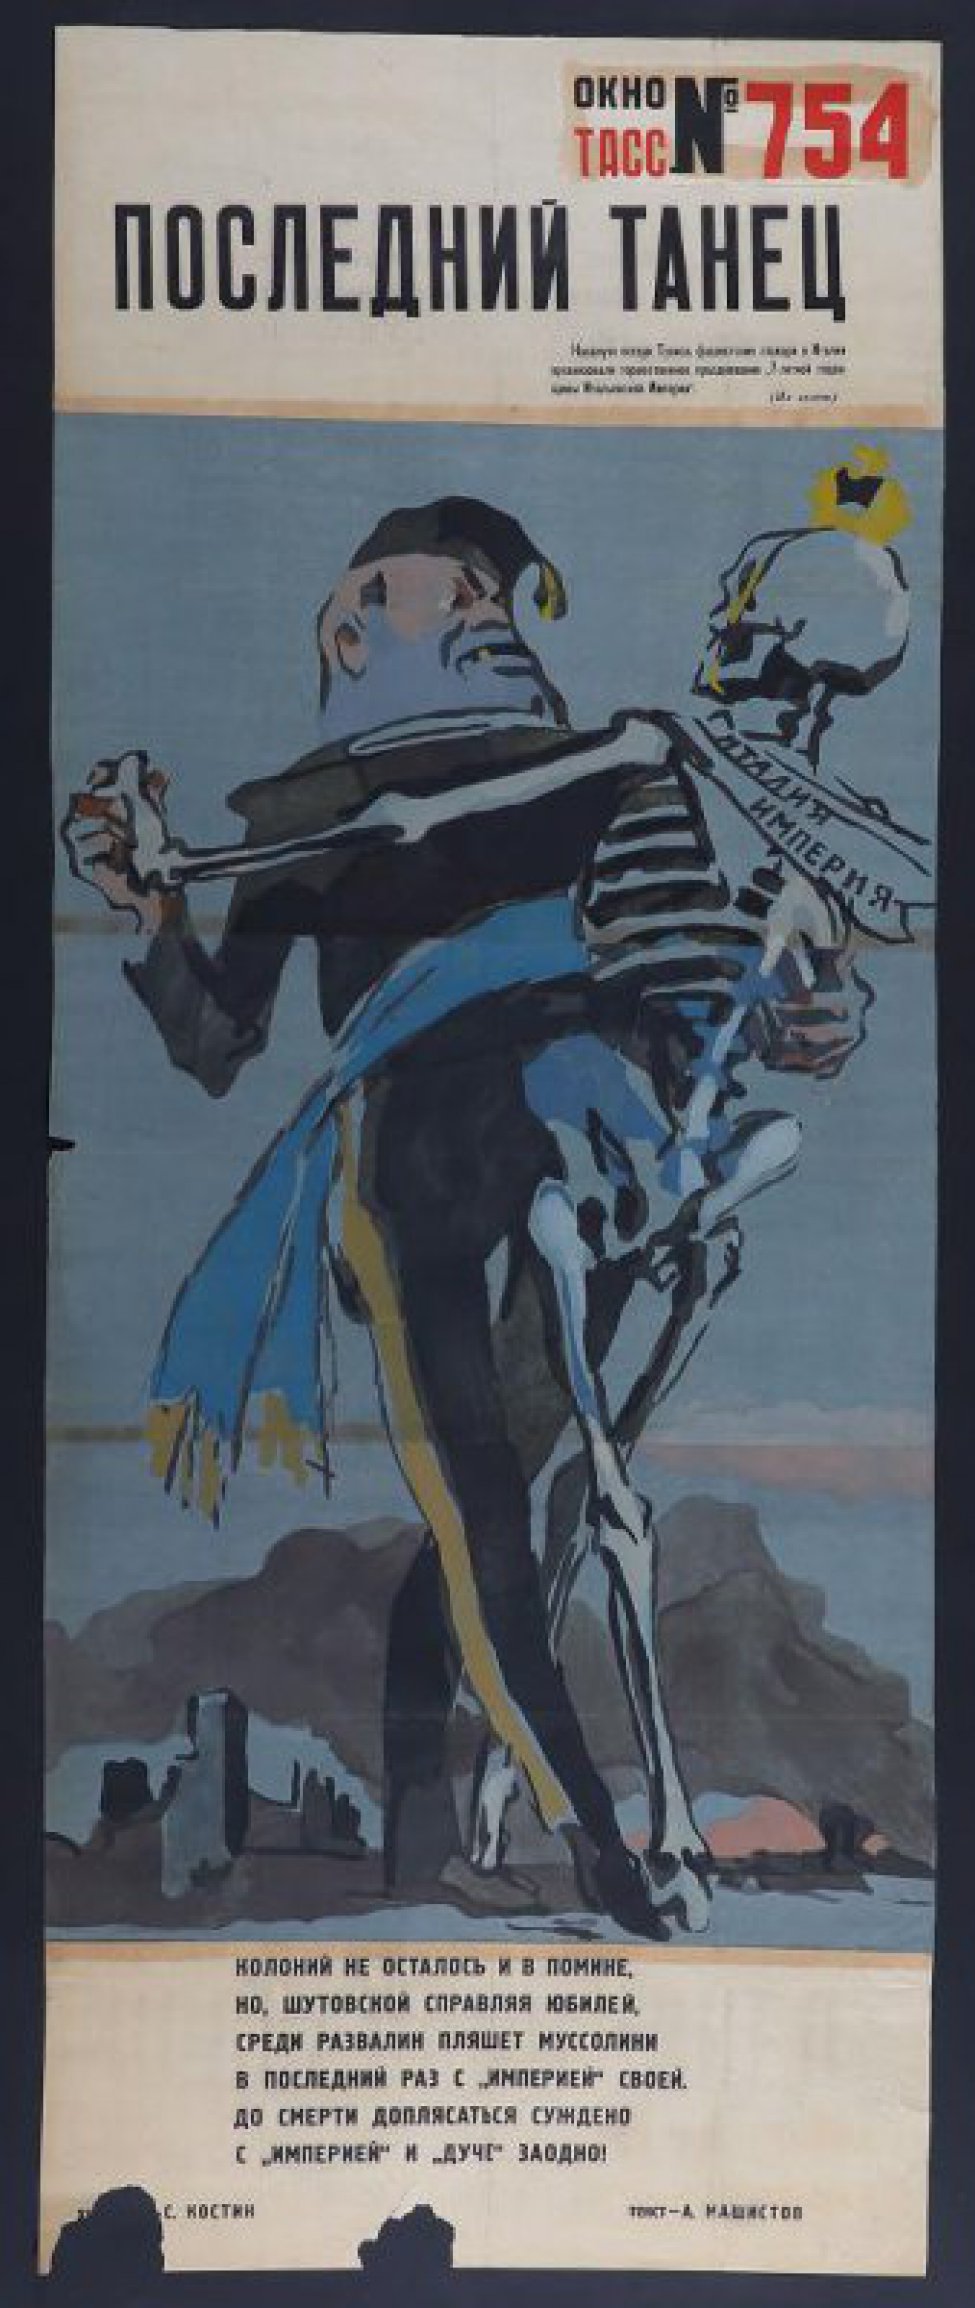 Изображено: Муссолини танцует со скелетом, на котором развеваются ленты с надписью " Италия, " " Империя", текст А.Машистова: " Колоний   не осталось и в помине"...